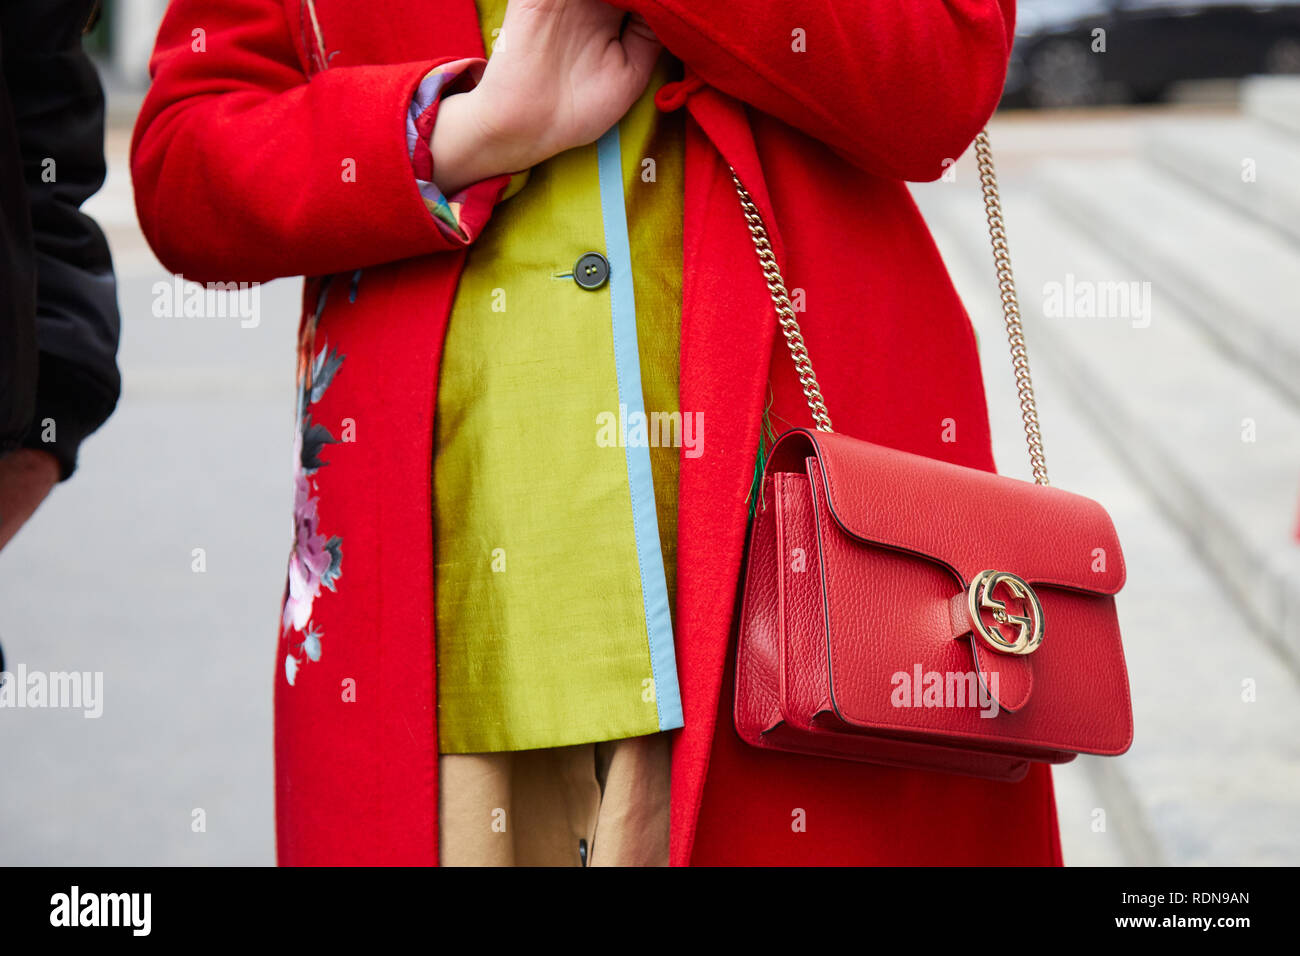 Mailand, Italien - Januar 12, 2019: Frau mit roten Mantel und Gucci Ledertasche mit goldenen Kette vor dem Dolce & Gabbana fashion show, Mailand Fashion Week s Stockfoto